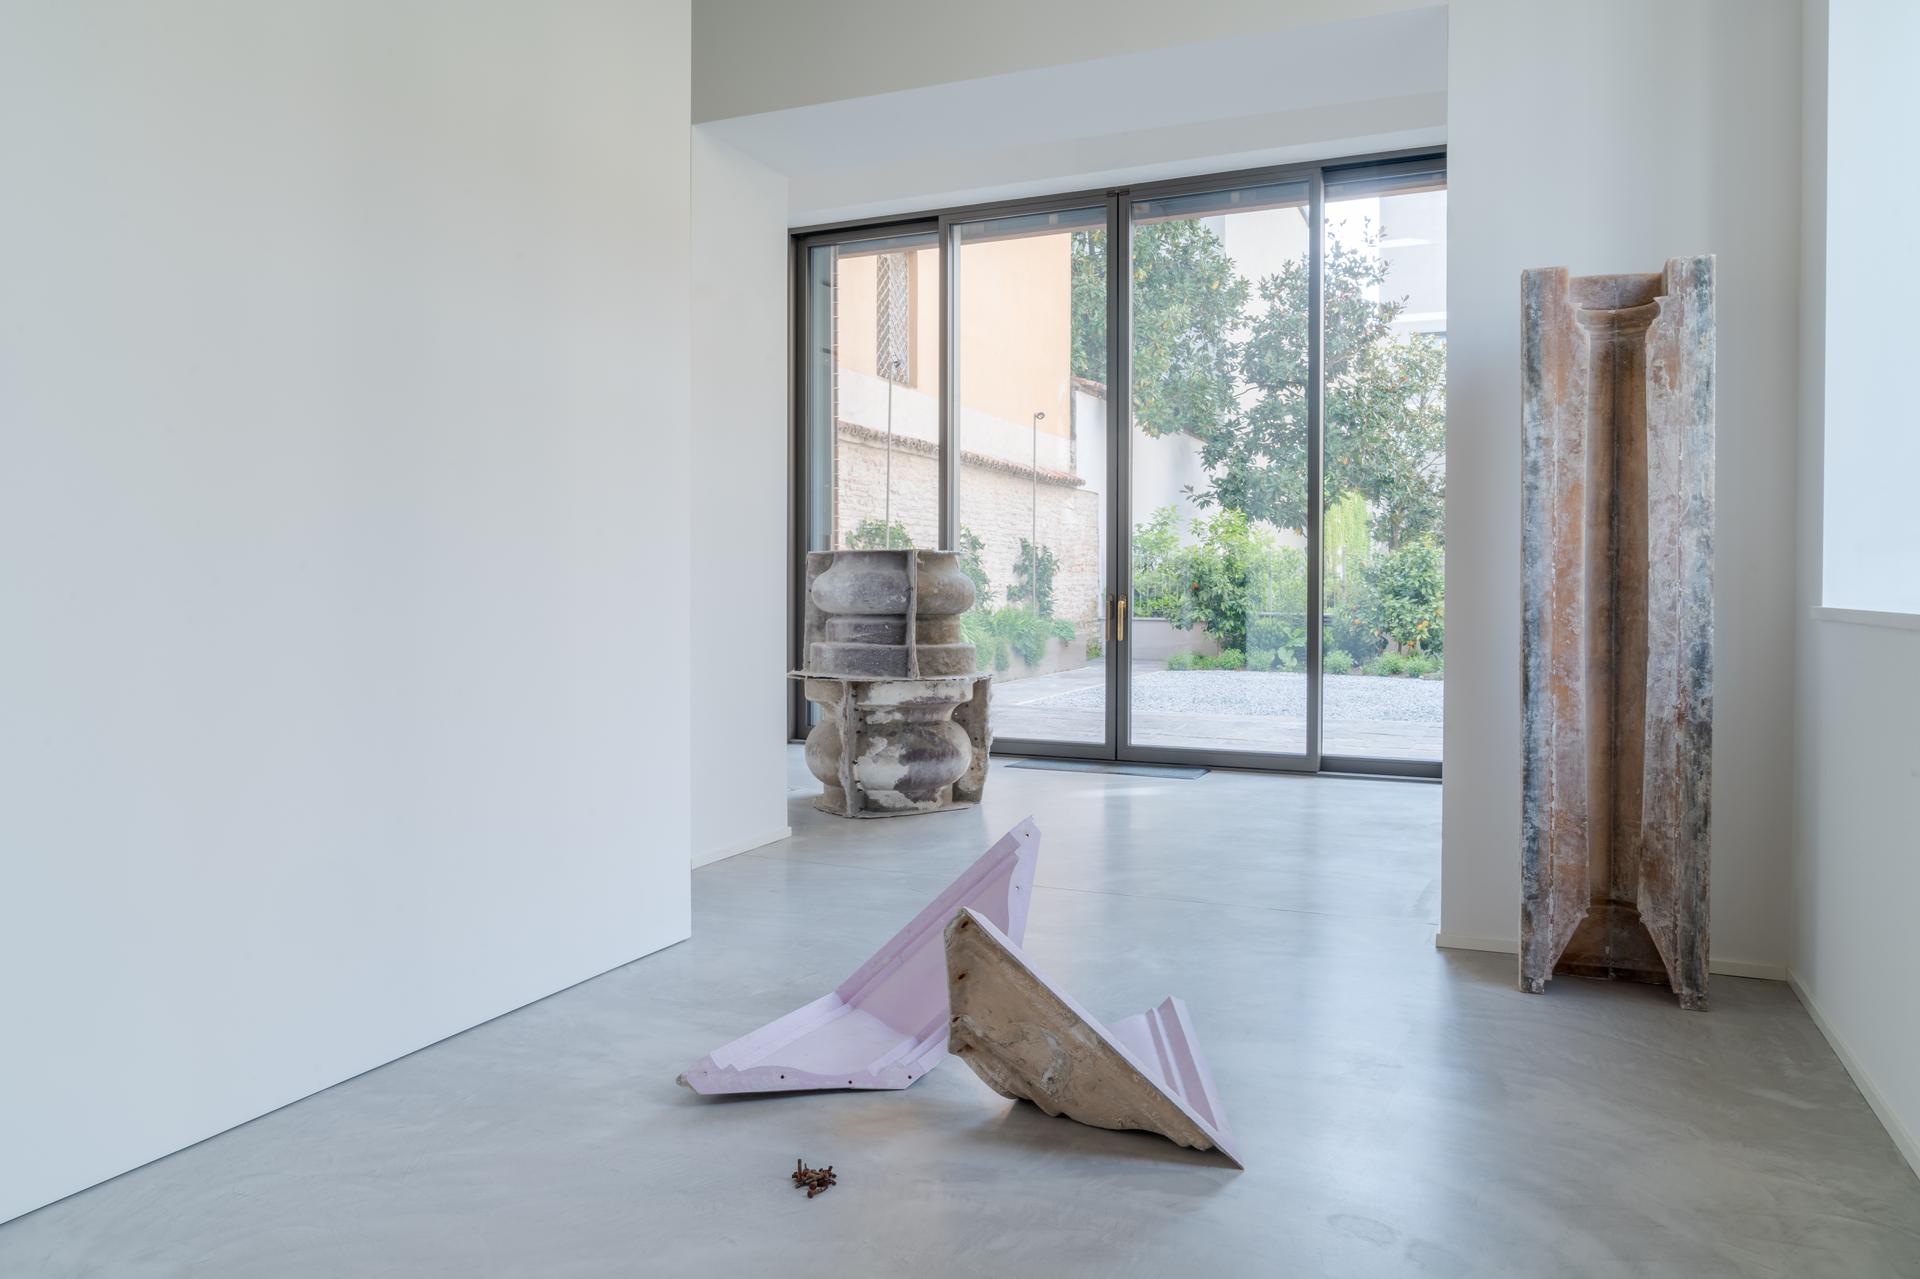 Installation view, Un Palazzo in esilio, Fondazione Elpis,.Ph Fabrizio Vatieri